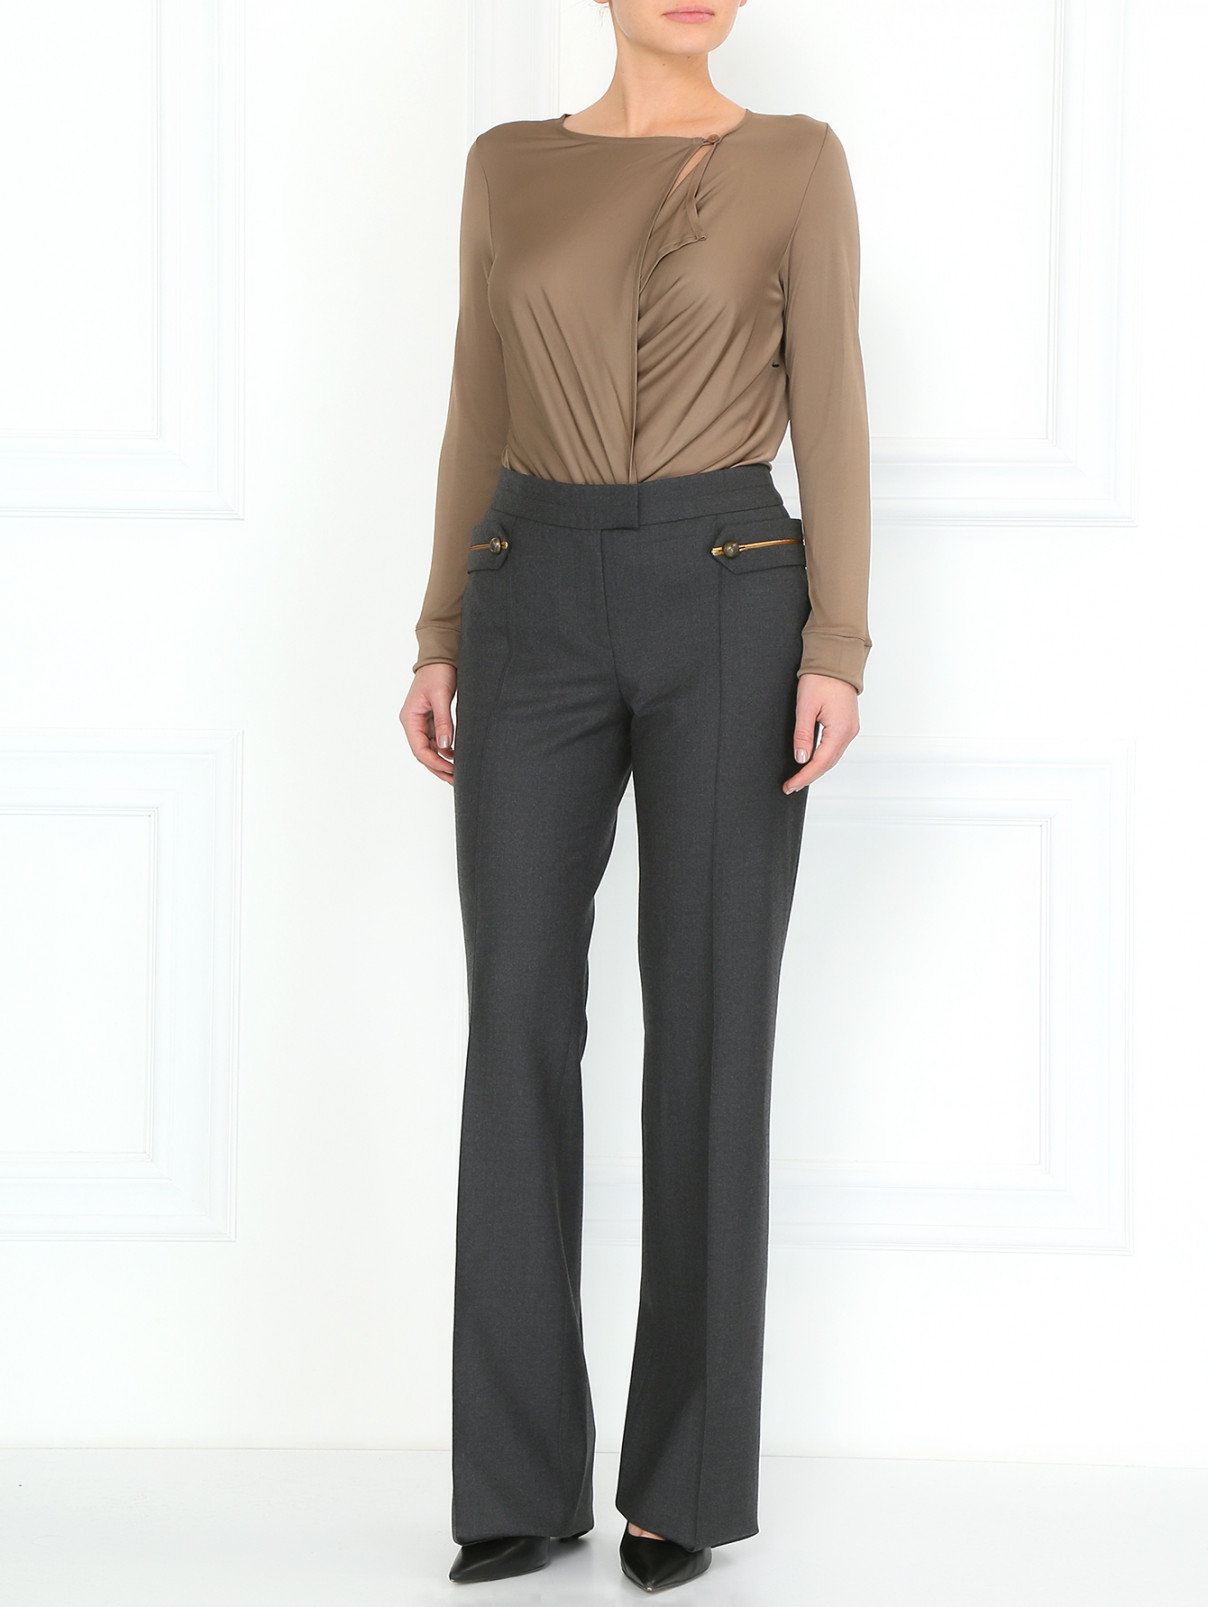 Широкие брюки из шерсти с декоративным ремнем на пуговицах Barbara Bui  –  Модель Общий вид  – Цвет:  Серый